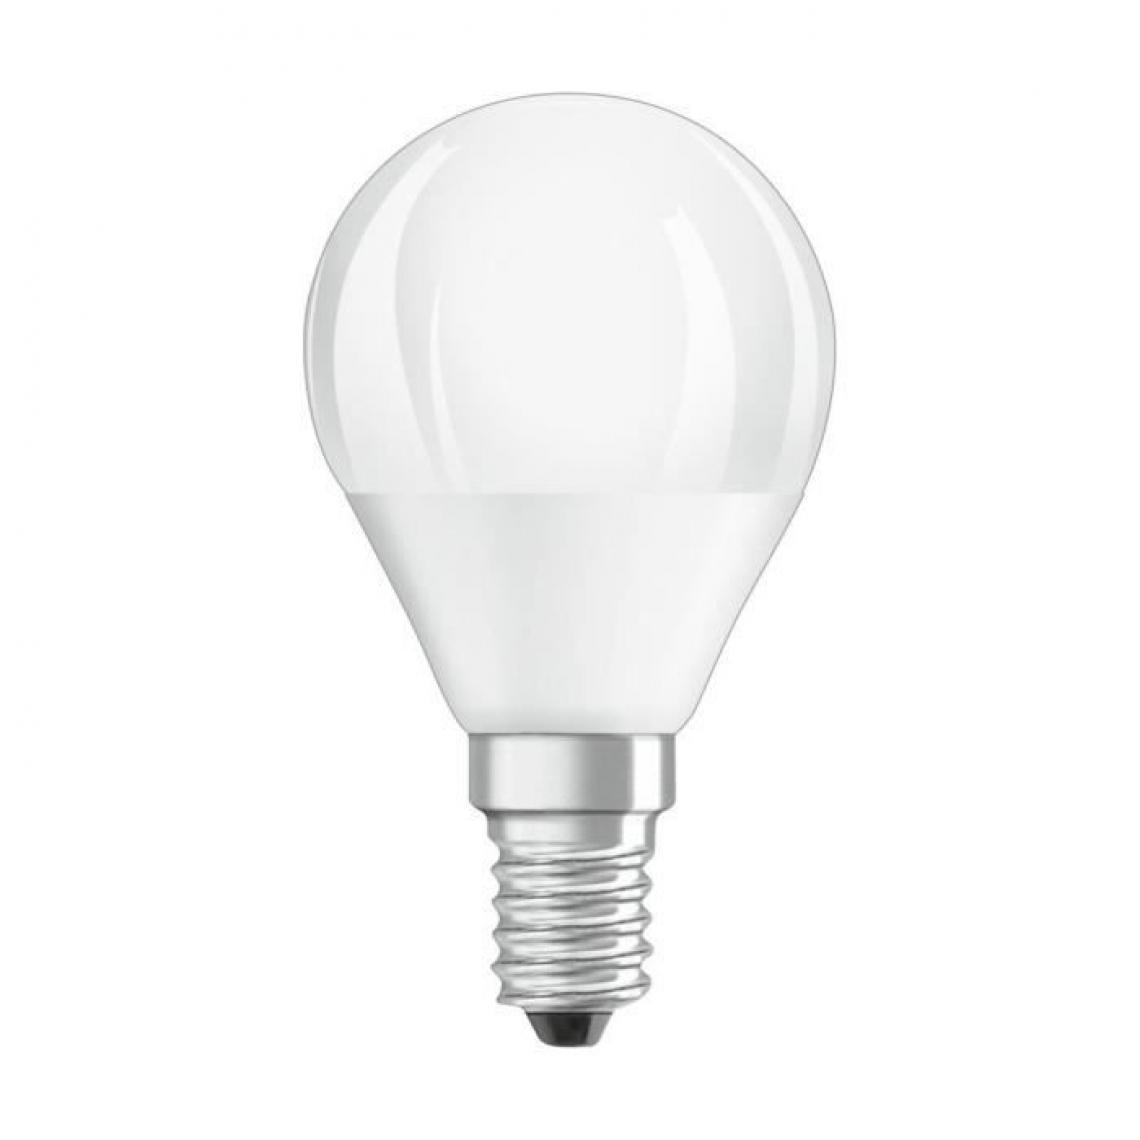 Cstore - BELLALUX Lot de 6 Ampoules LED Sphérique clair filament 5W=40 E14 froid - Ampoules LED